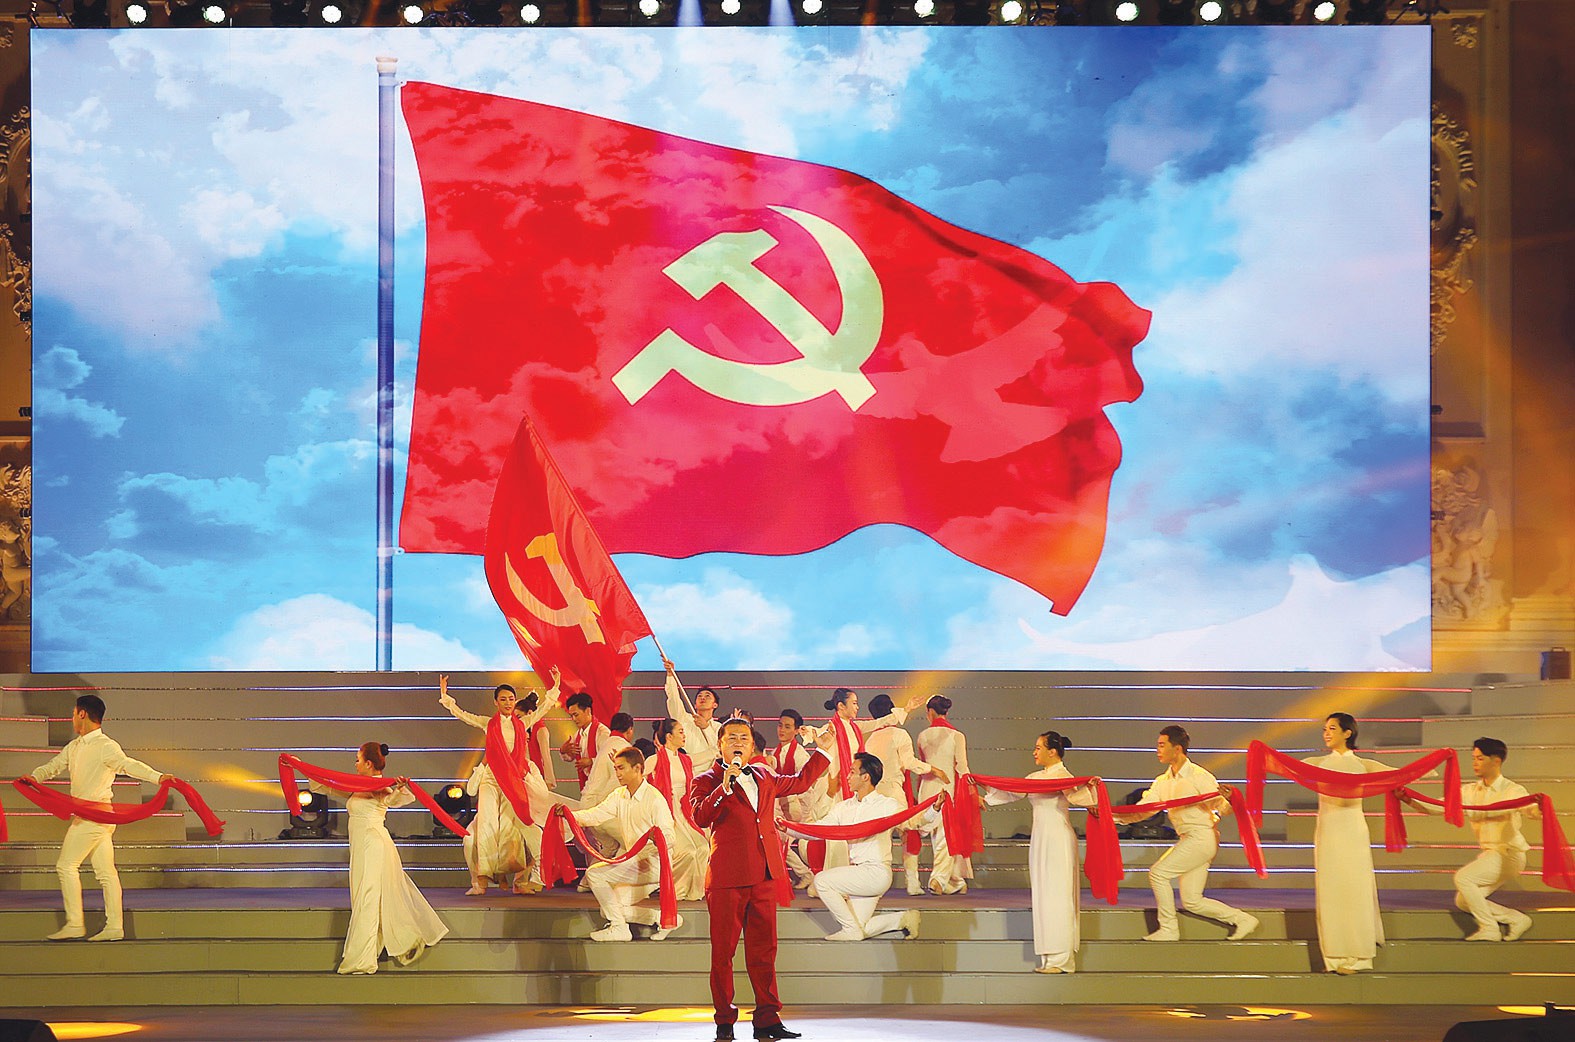 Lá cờ Đảng cộng sản Việt Nam:
Lá cờ Đảng cộng sản Việt Nam là biểu tượng của sự đoàn kết và trường tồn của Nhân dân ta. Giờ đây, cách tiếp cận và sử dụng lá cờ đã được cải tiến theo hướng hiện đại, nhằm đem đến sự hiểu biết sâu sắc và tình yêu quê hương cho các thế hệ trẻ. Hãy đến và trải nghiệm những giây phút tuyệt vời với lá cờ Đảng cộng sản Việt Nam tại ảnh liên quan!